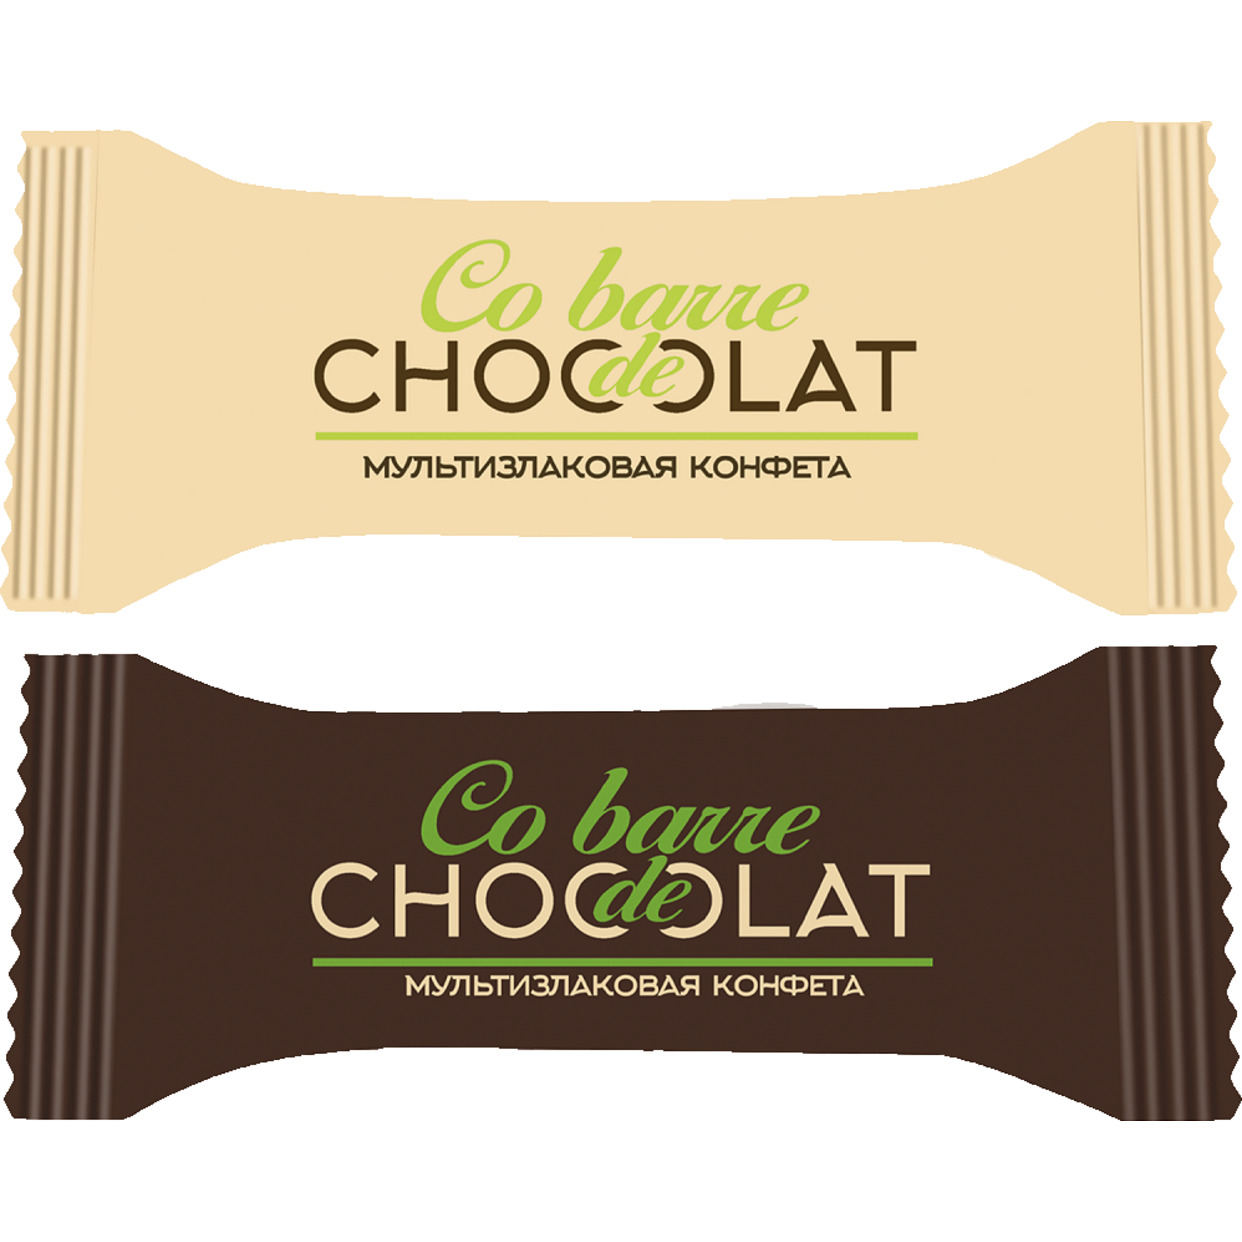 Мультизлаковые конфеты CO BARRE DE CHOCOLAT с белой и темной кондитерской глазурью 1кг по акции в Пятерочке